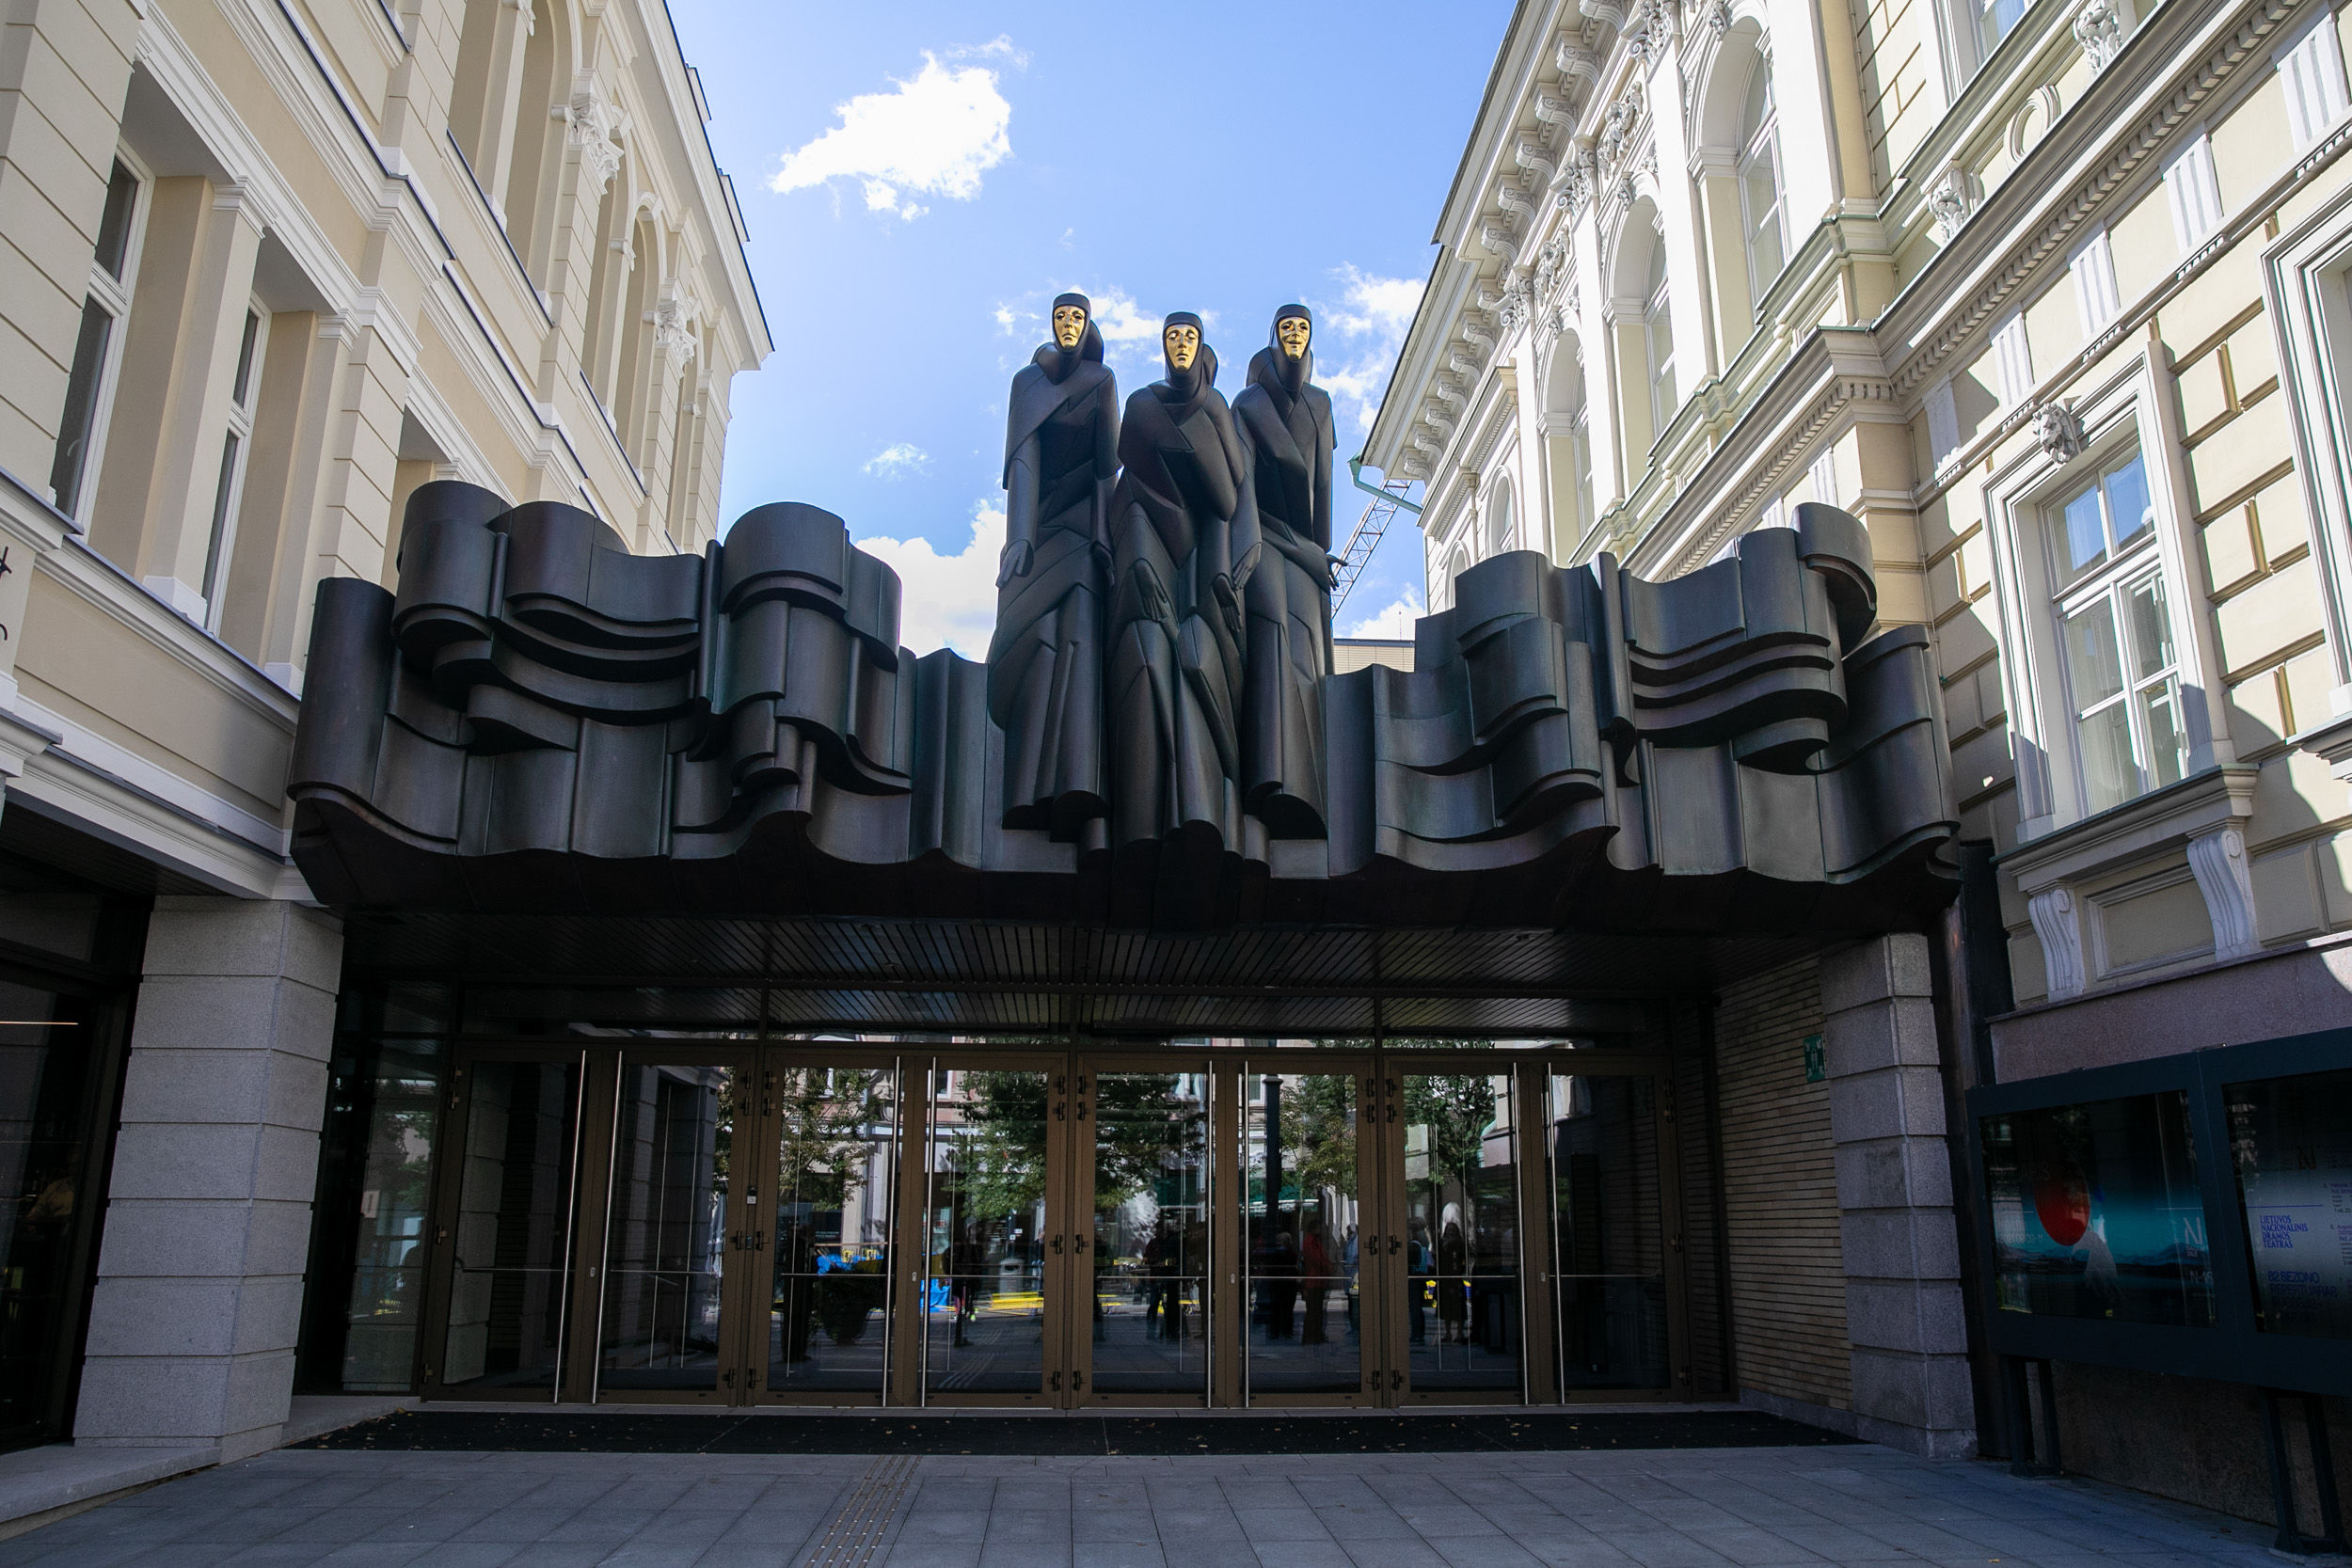 2021 сентября 09 г. Литовский национальный драматический театр открыл свои двери после реконструкции. в 02 году 2021 сентября